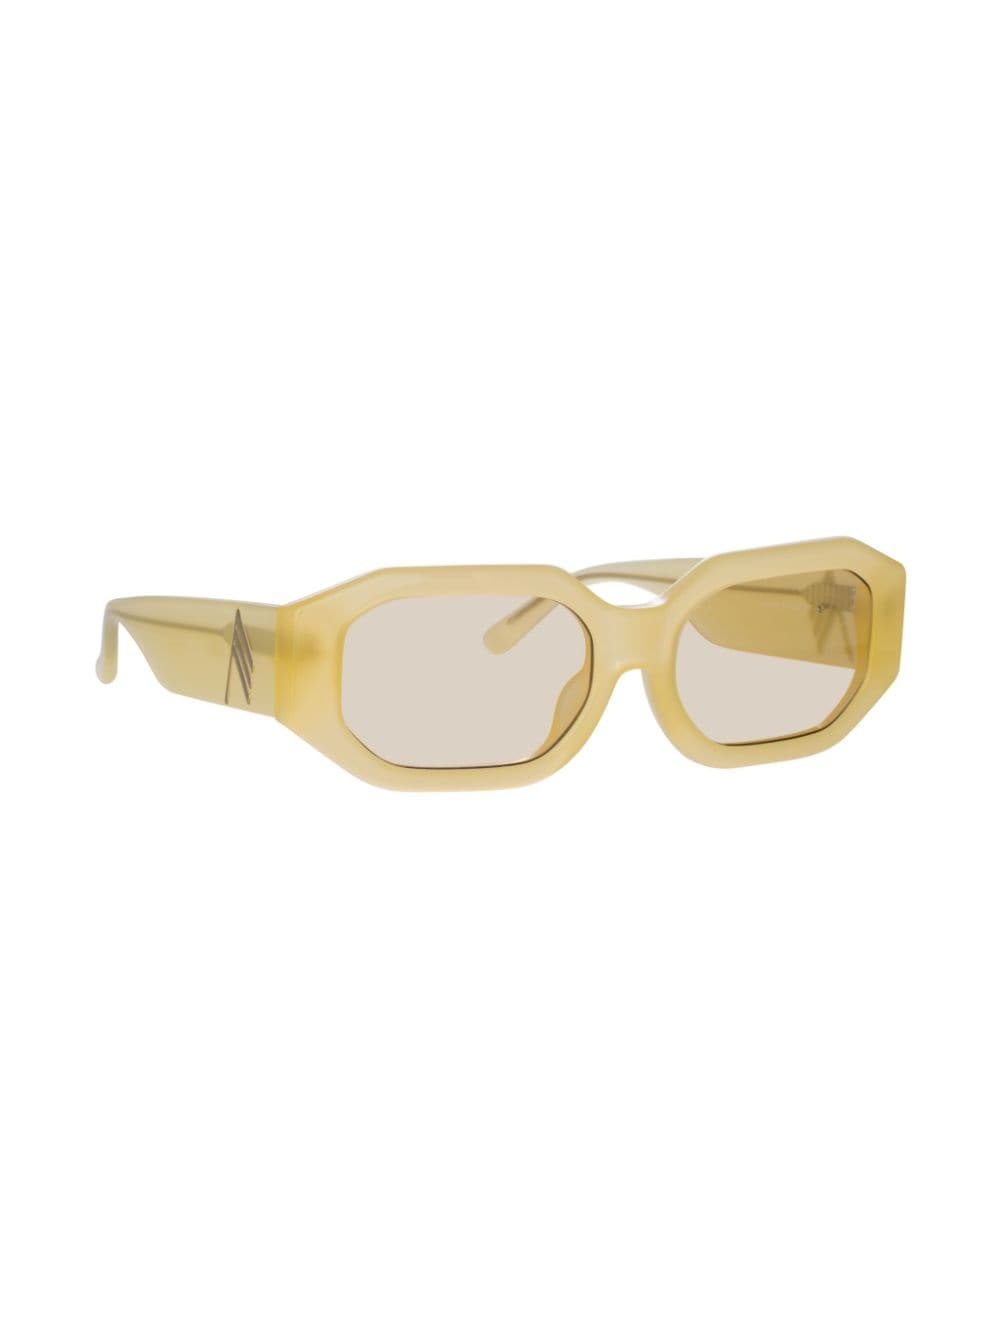 Blake oval-lenses sunglasses - 2